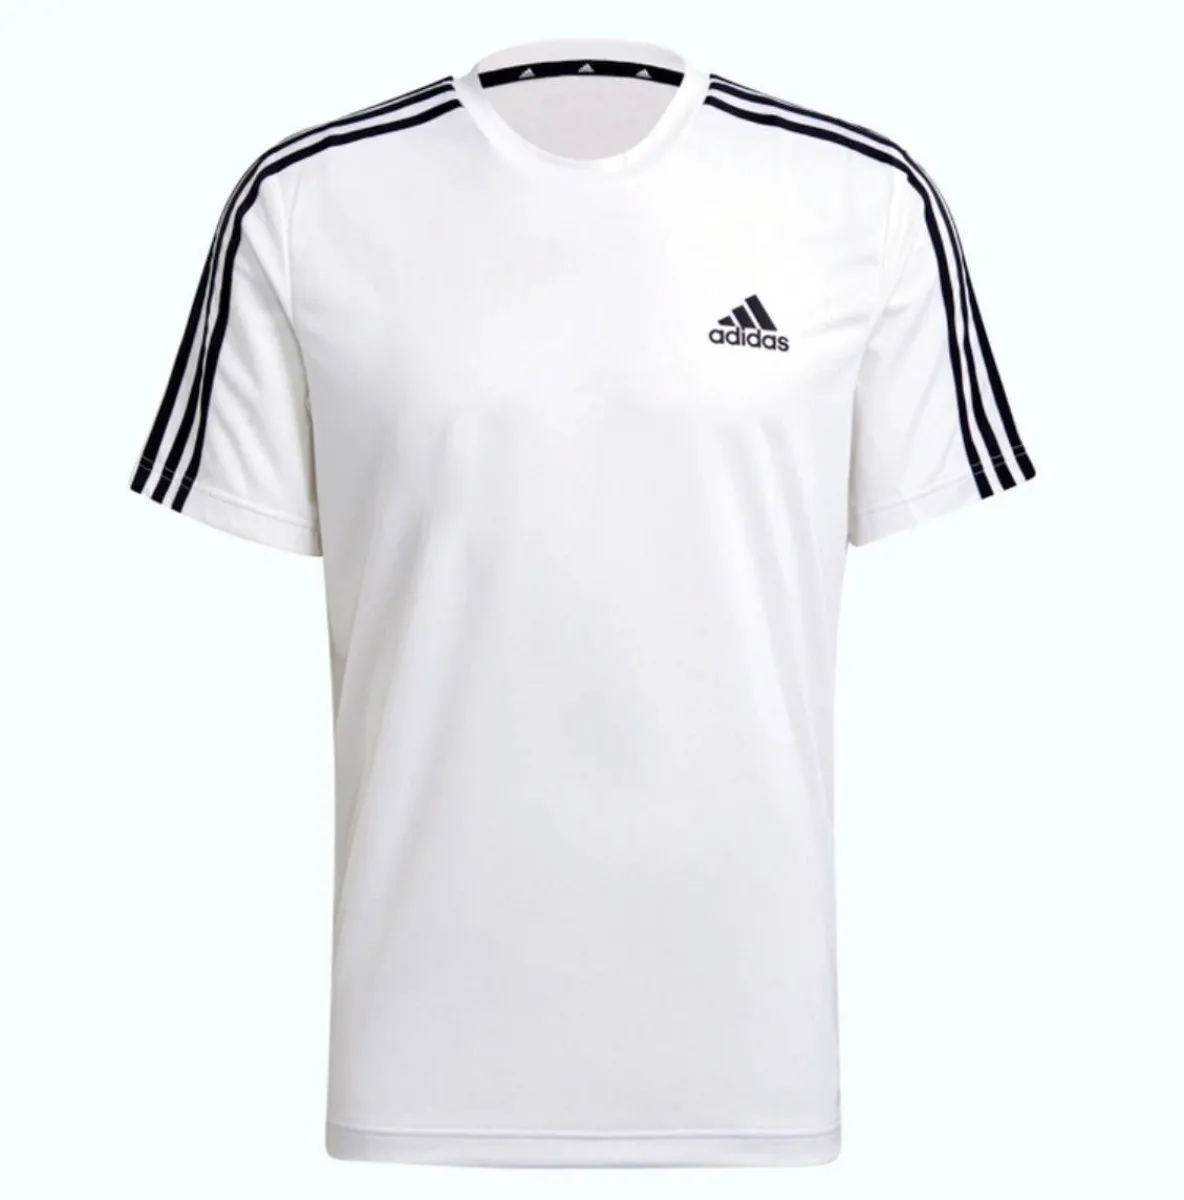 adidas T-Shirt 3S white